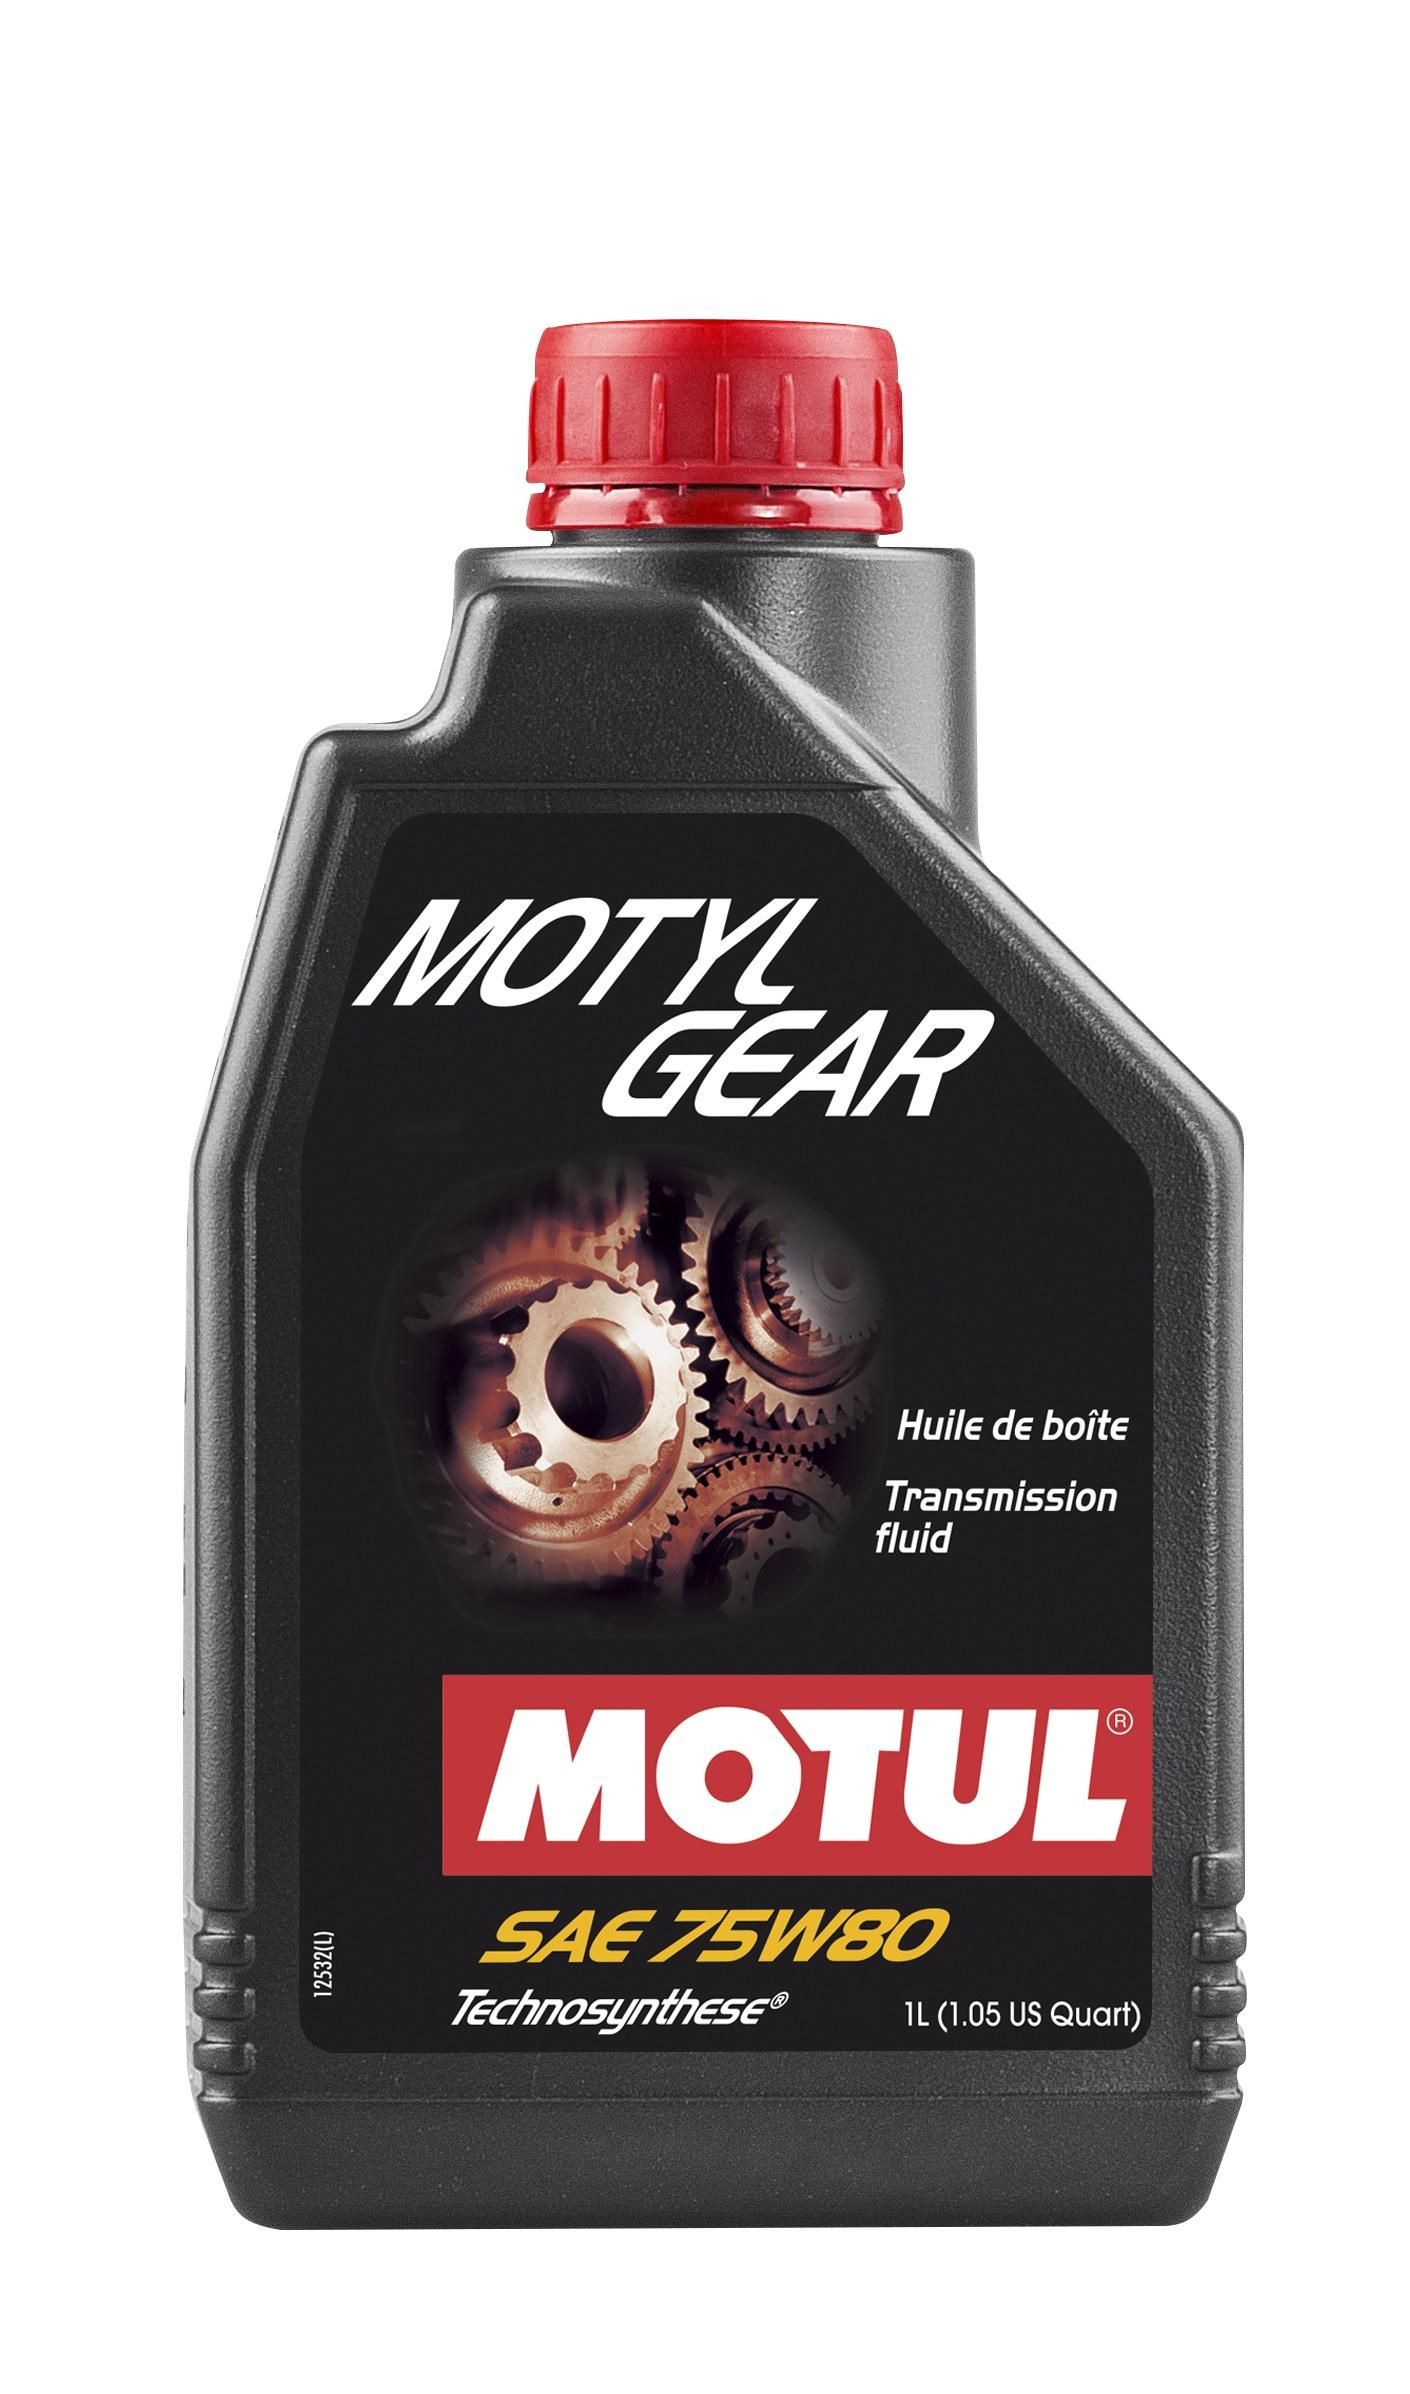 Трансмиссионное масло MOTUL Motylgear 75W-80, 1 литр 75W80 (823401 / 105782)